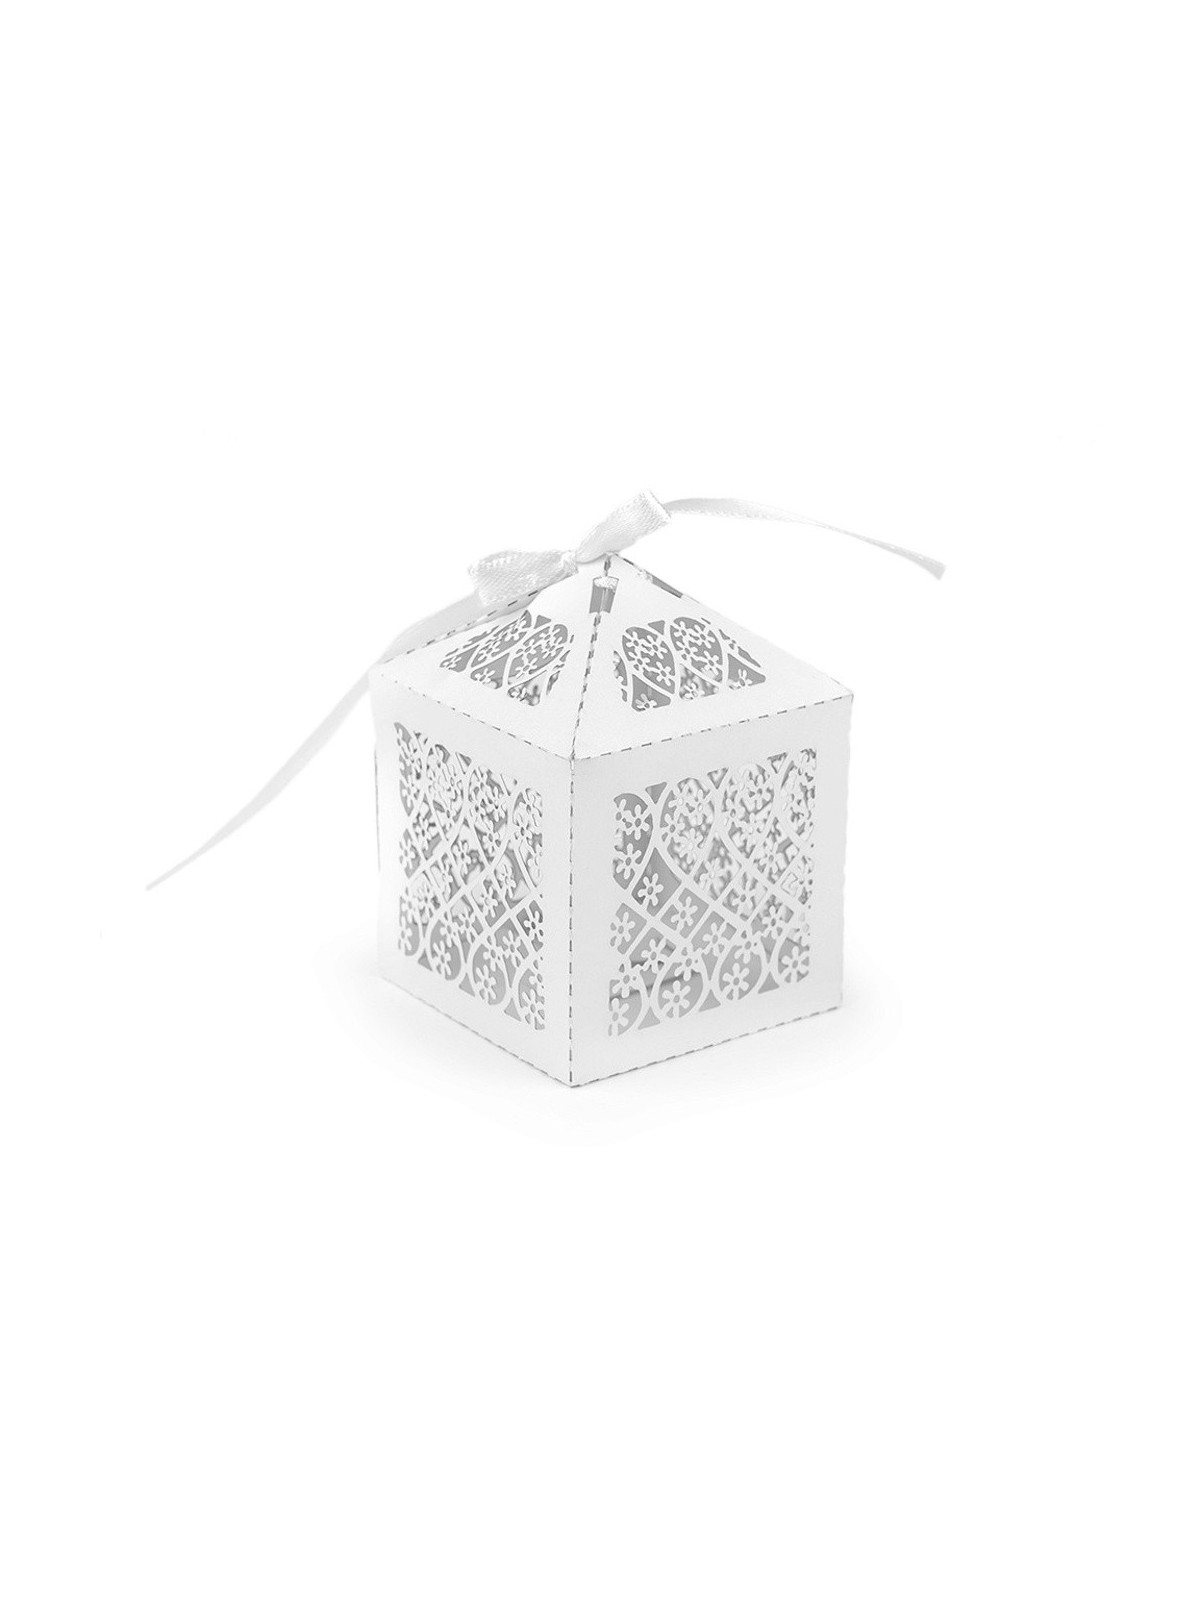 Perleťová krabička s vyřezávaným motivem - kvítka - 5,5 x 5,5cm